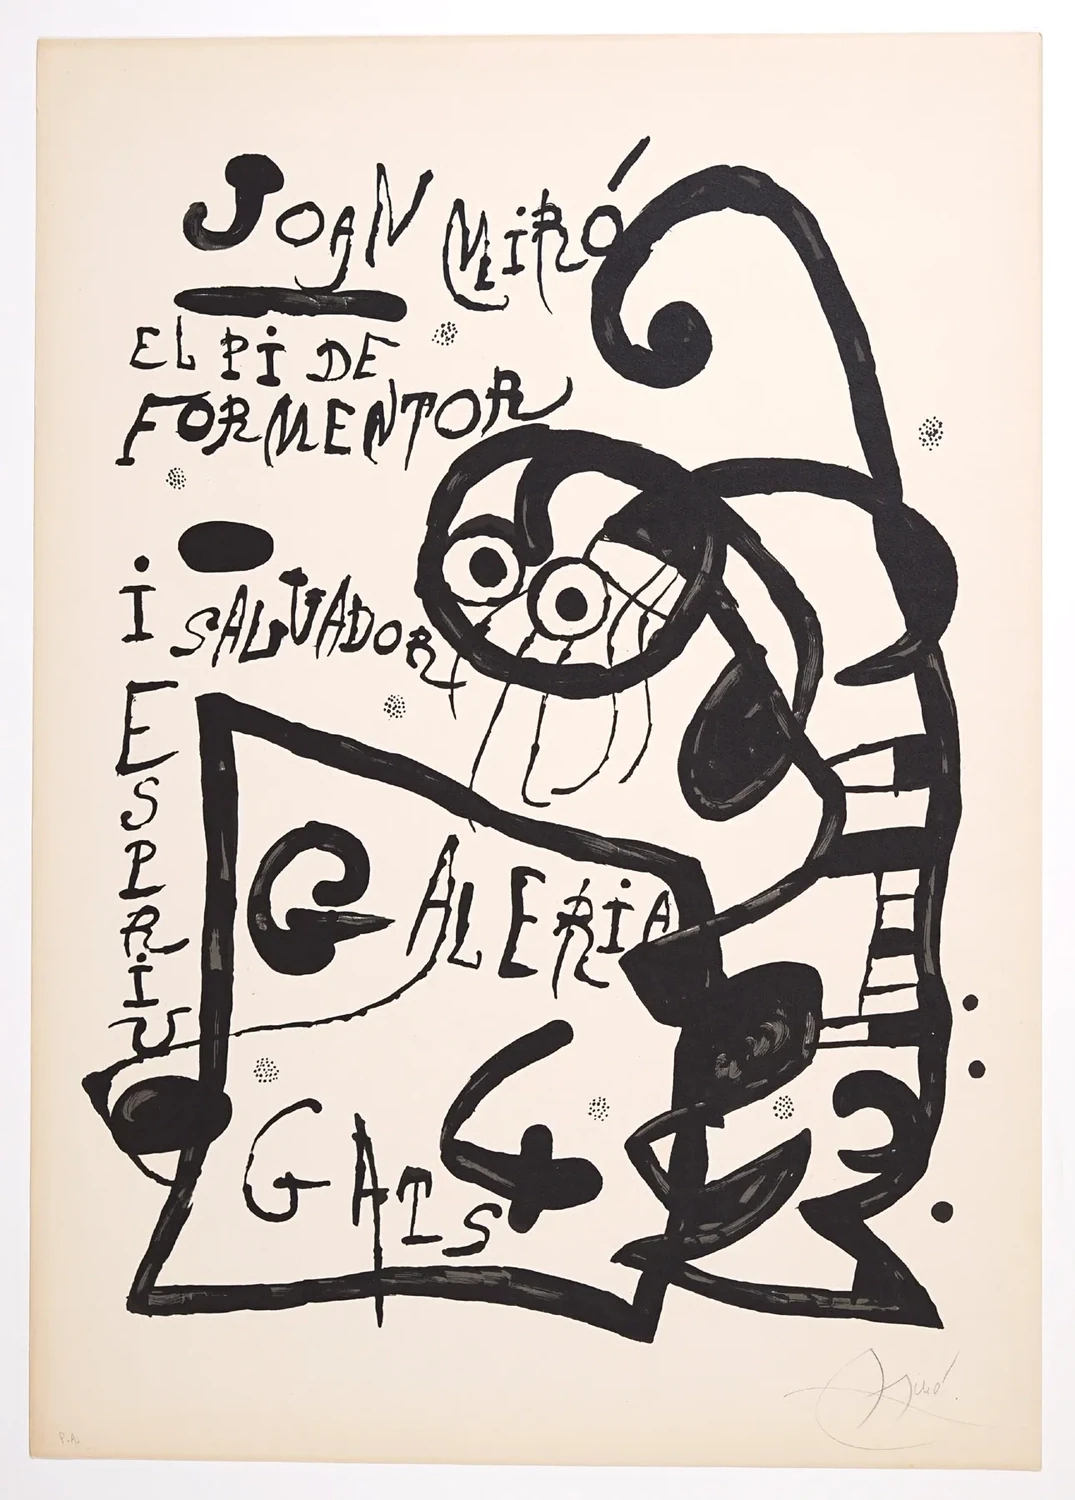 Joan Miró "El PI de Formentor"